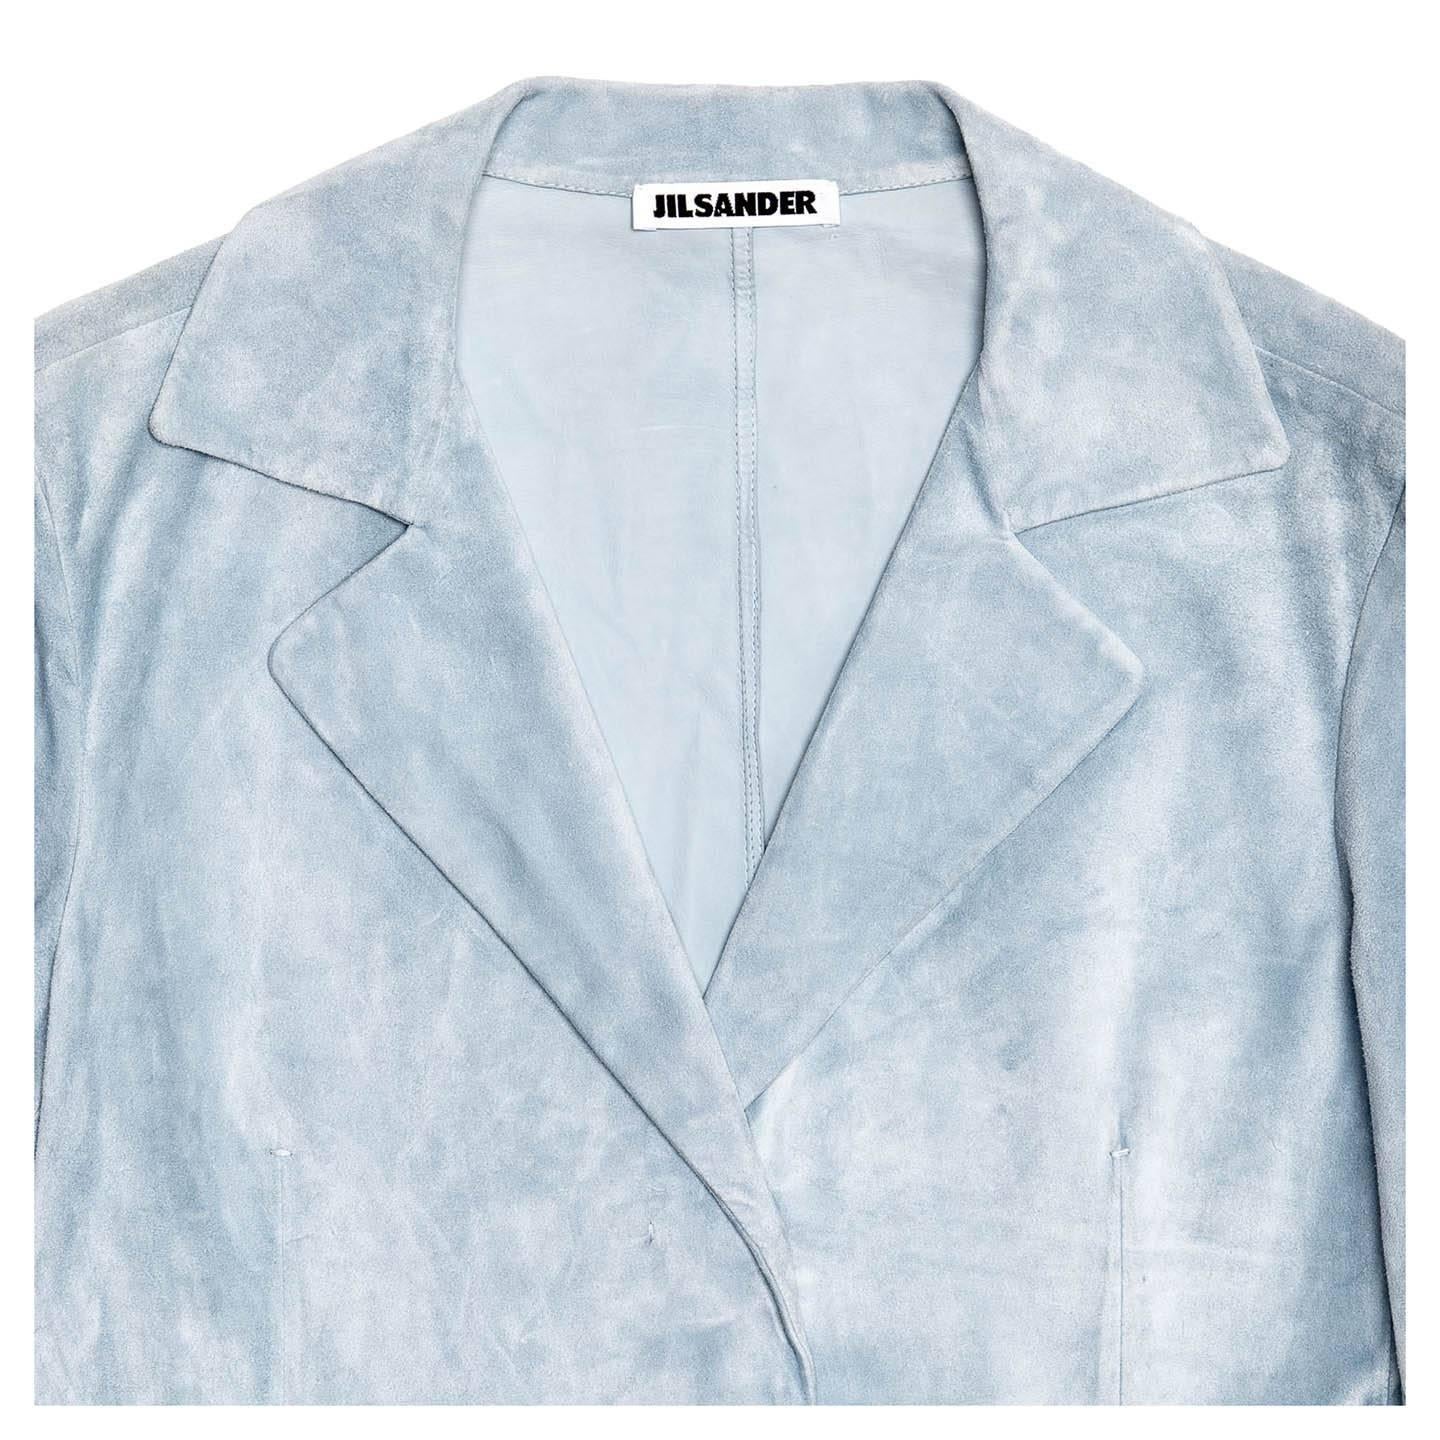 Jil Sander Blue Suede Cropped Blazer For Sale 1